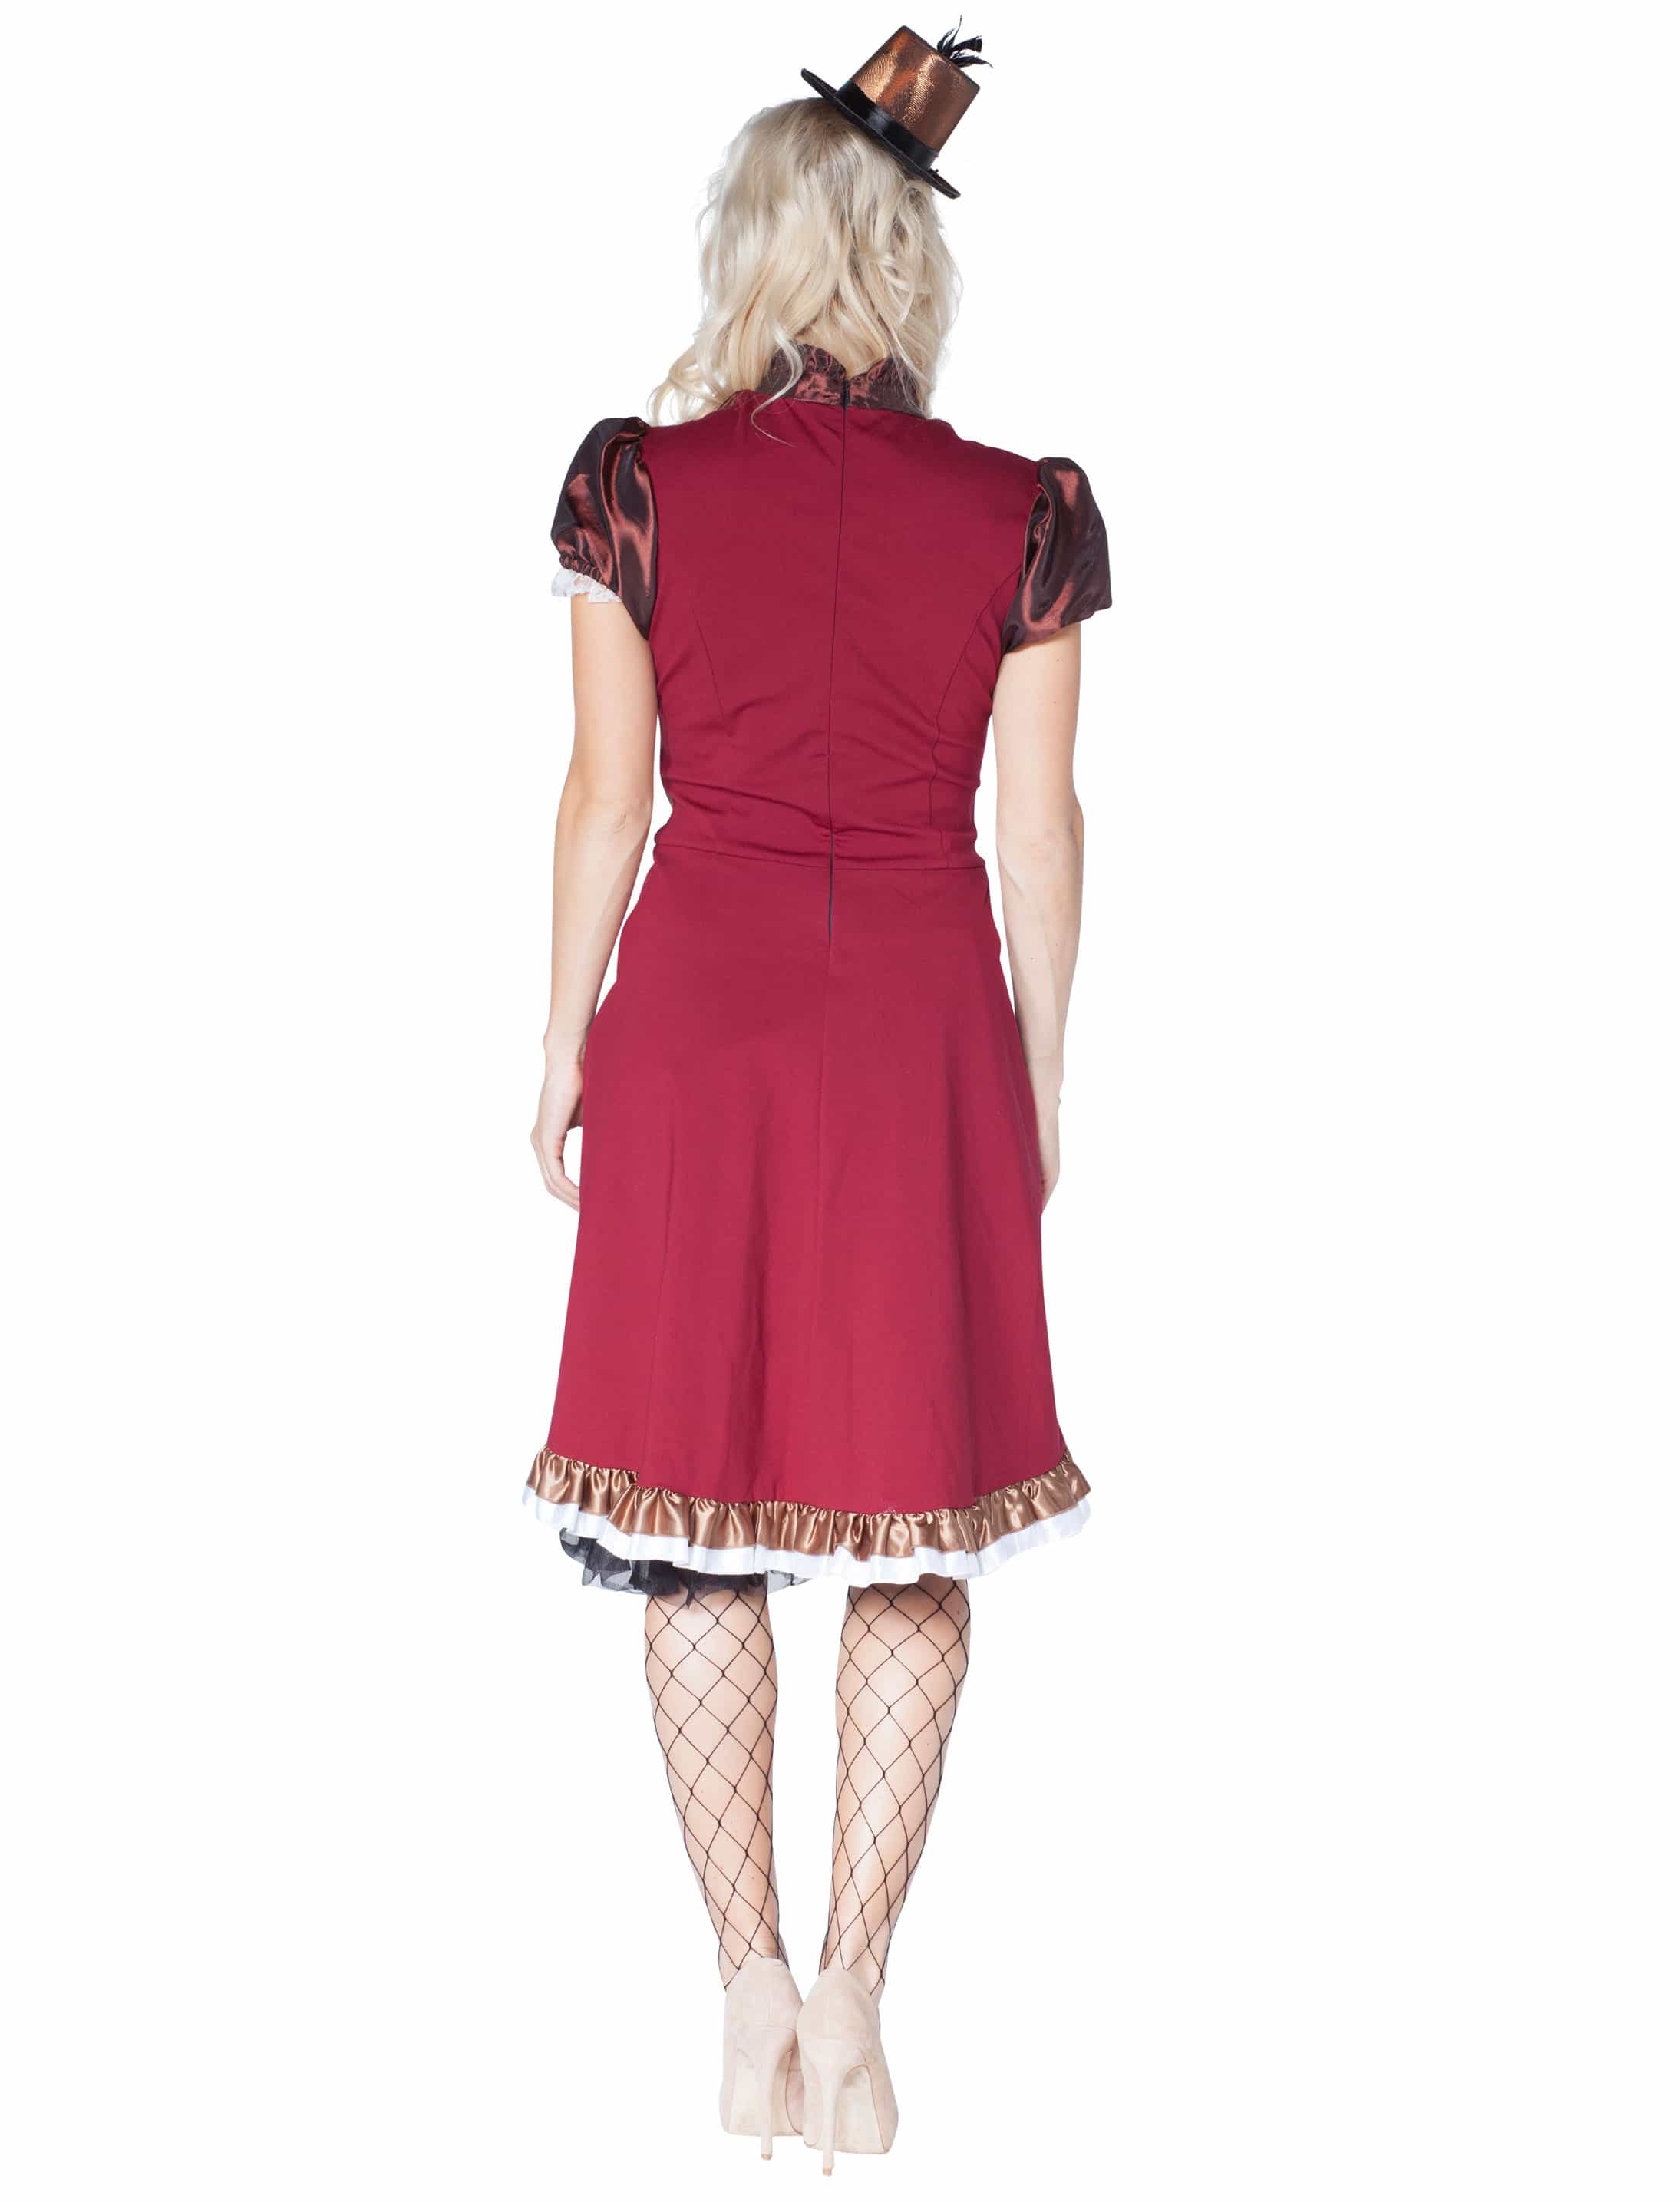 Kleid Steampunk braun/rot 44